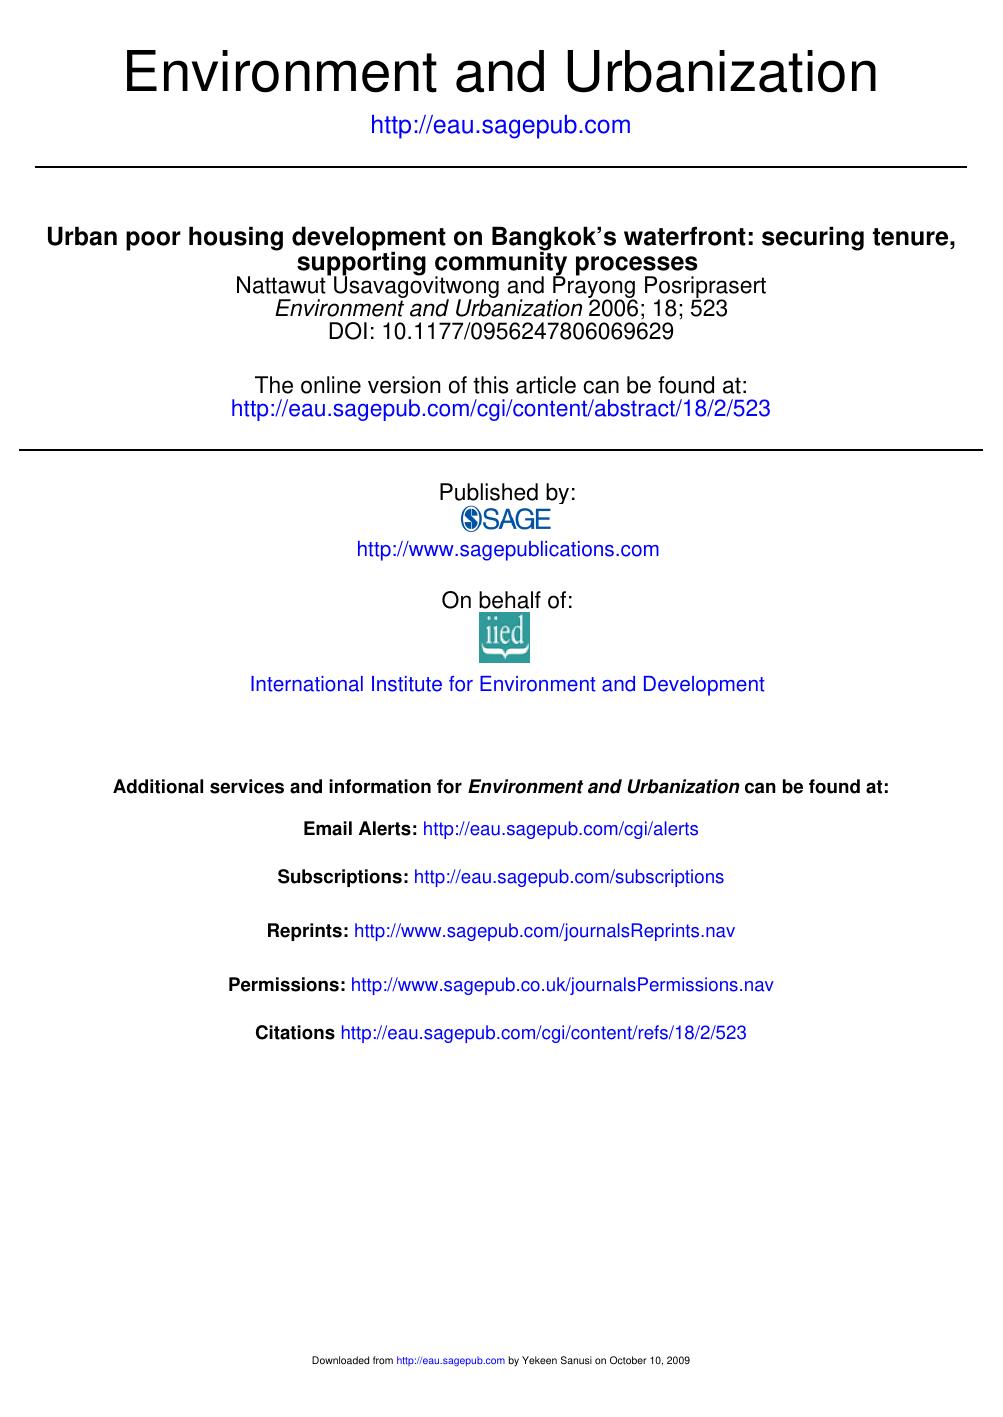 Urban poor housing development on Bangkok’s waterfront. 2006